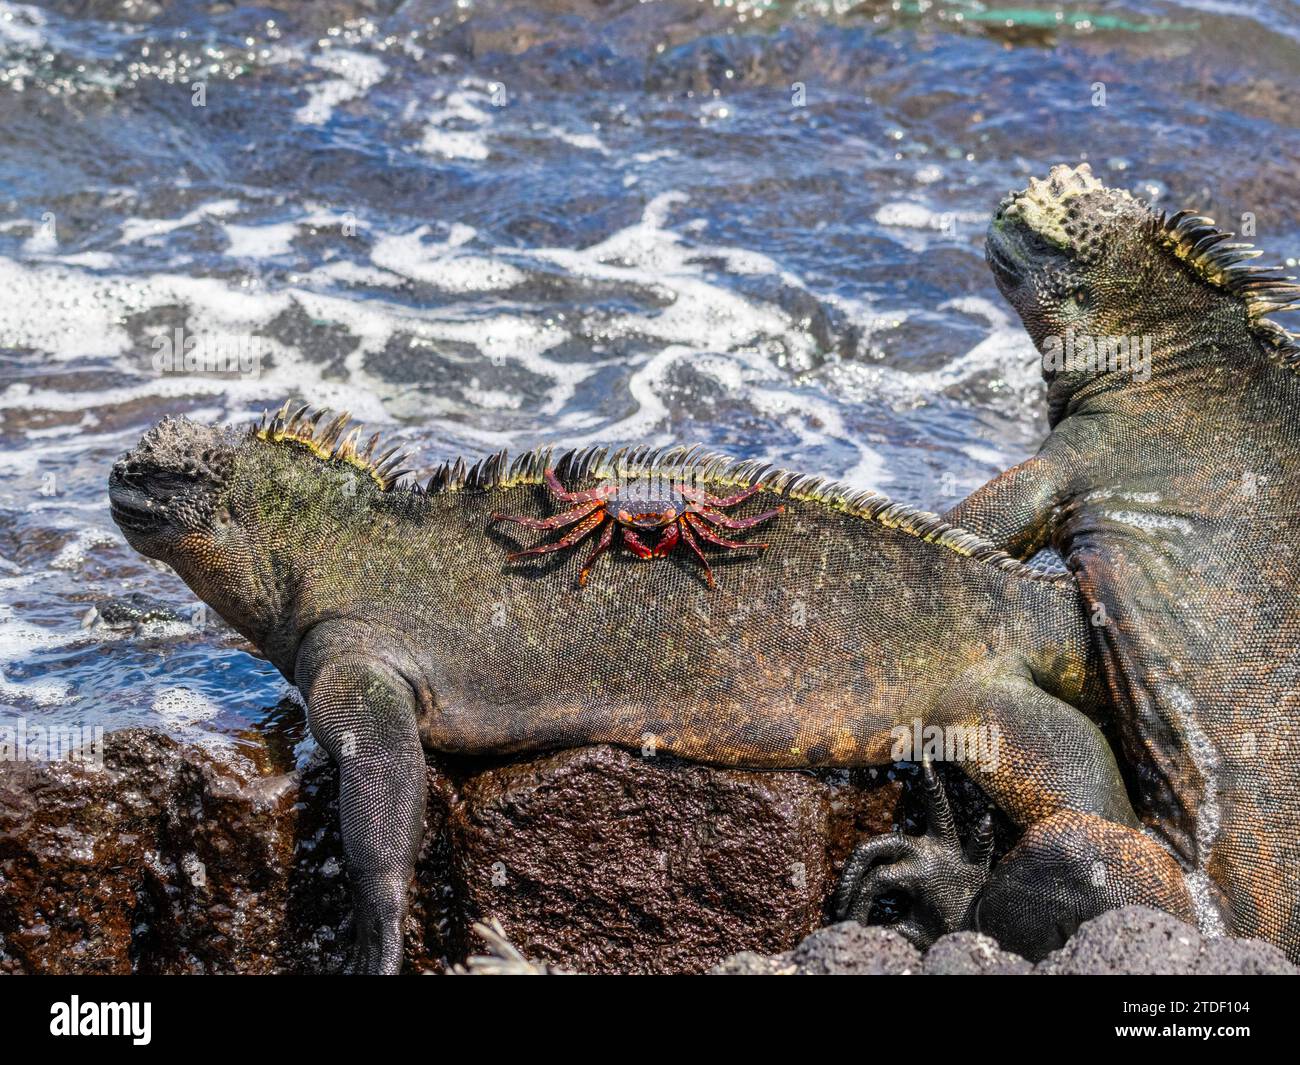 Un crabe Sally lightfoot adulte (Grapsus grapsus), sur un iguane marin sur l'île Fernandina, Galapagos, site du patrimoine mondial de l'UNESCO, Équateur Banque D'Images